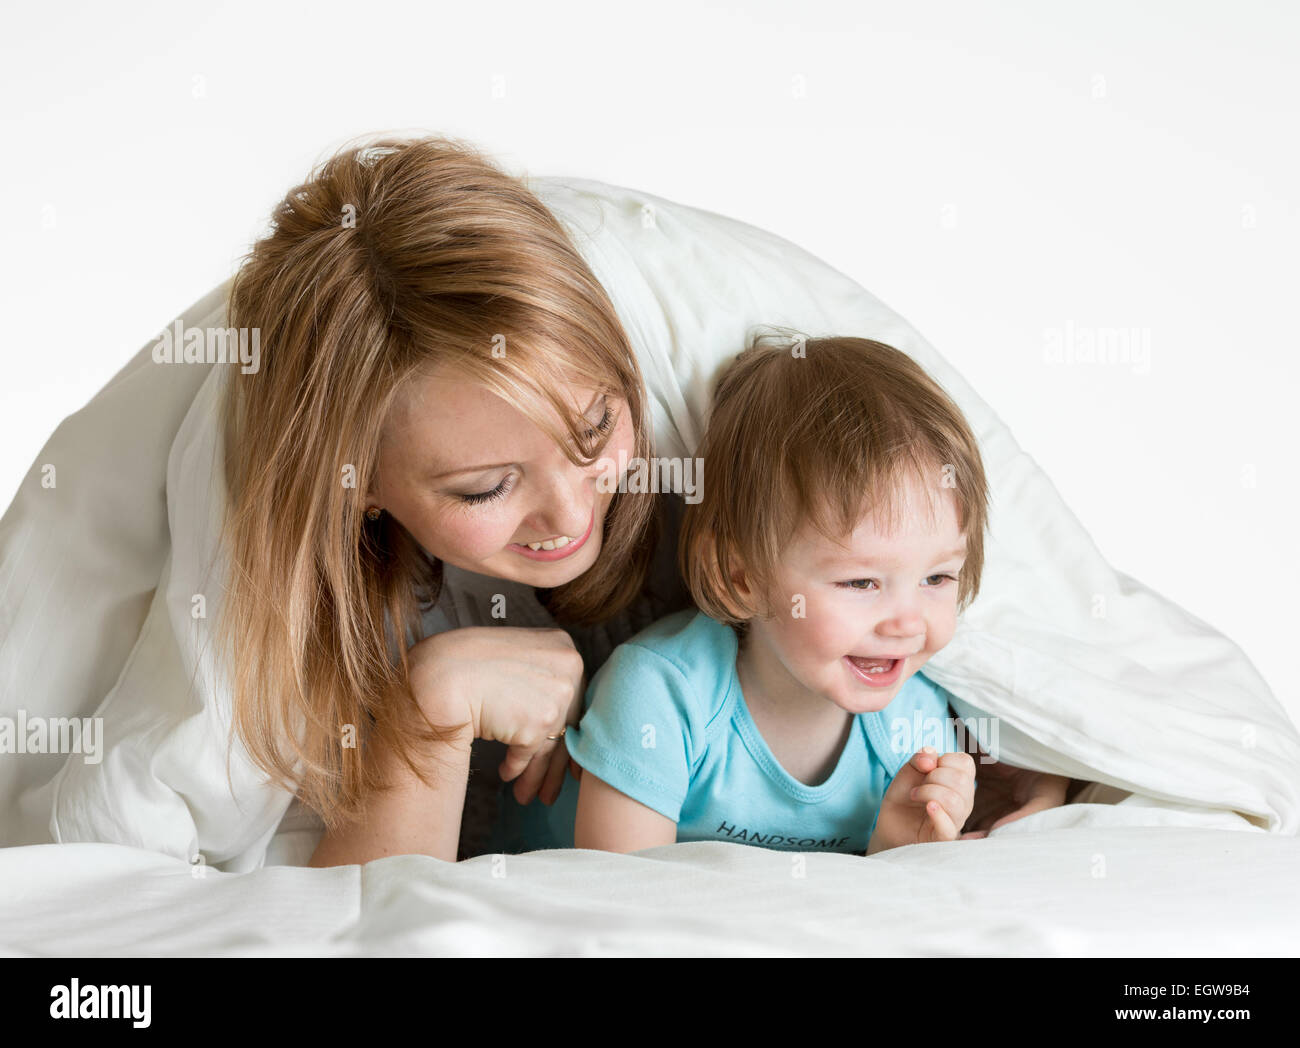 Felice la madre e il bambino che gioca al di sotto di una coperta Foto Stock